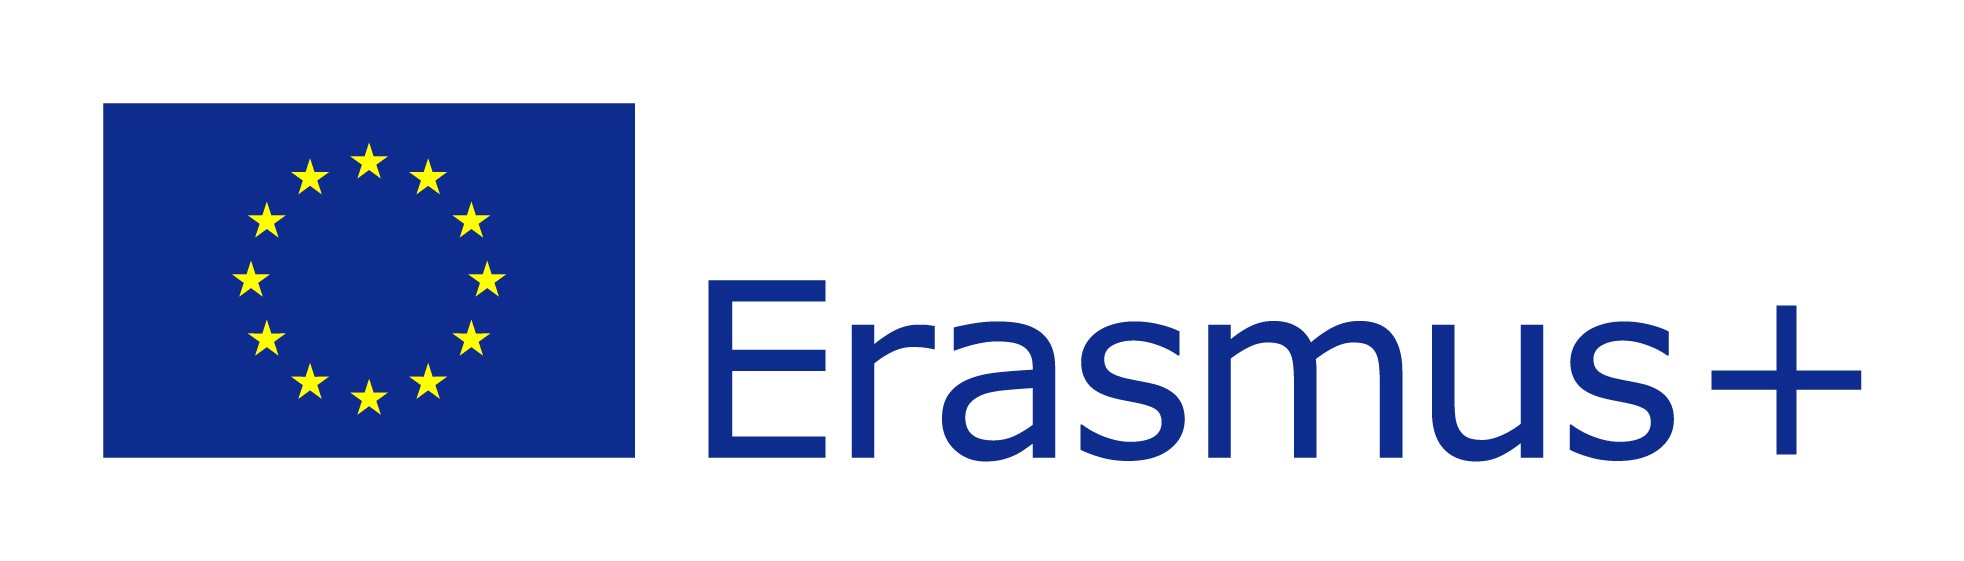 Erasmus+ Banner